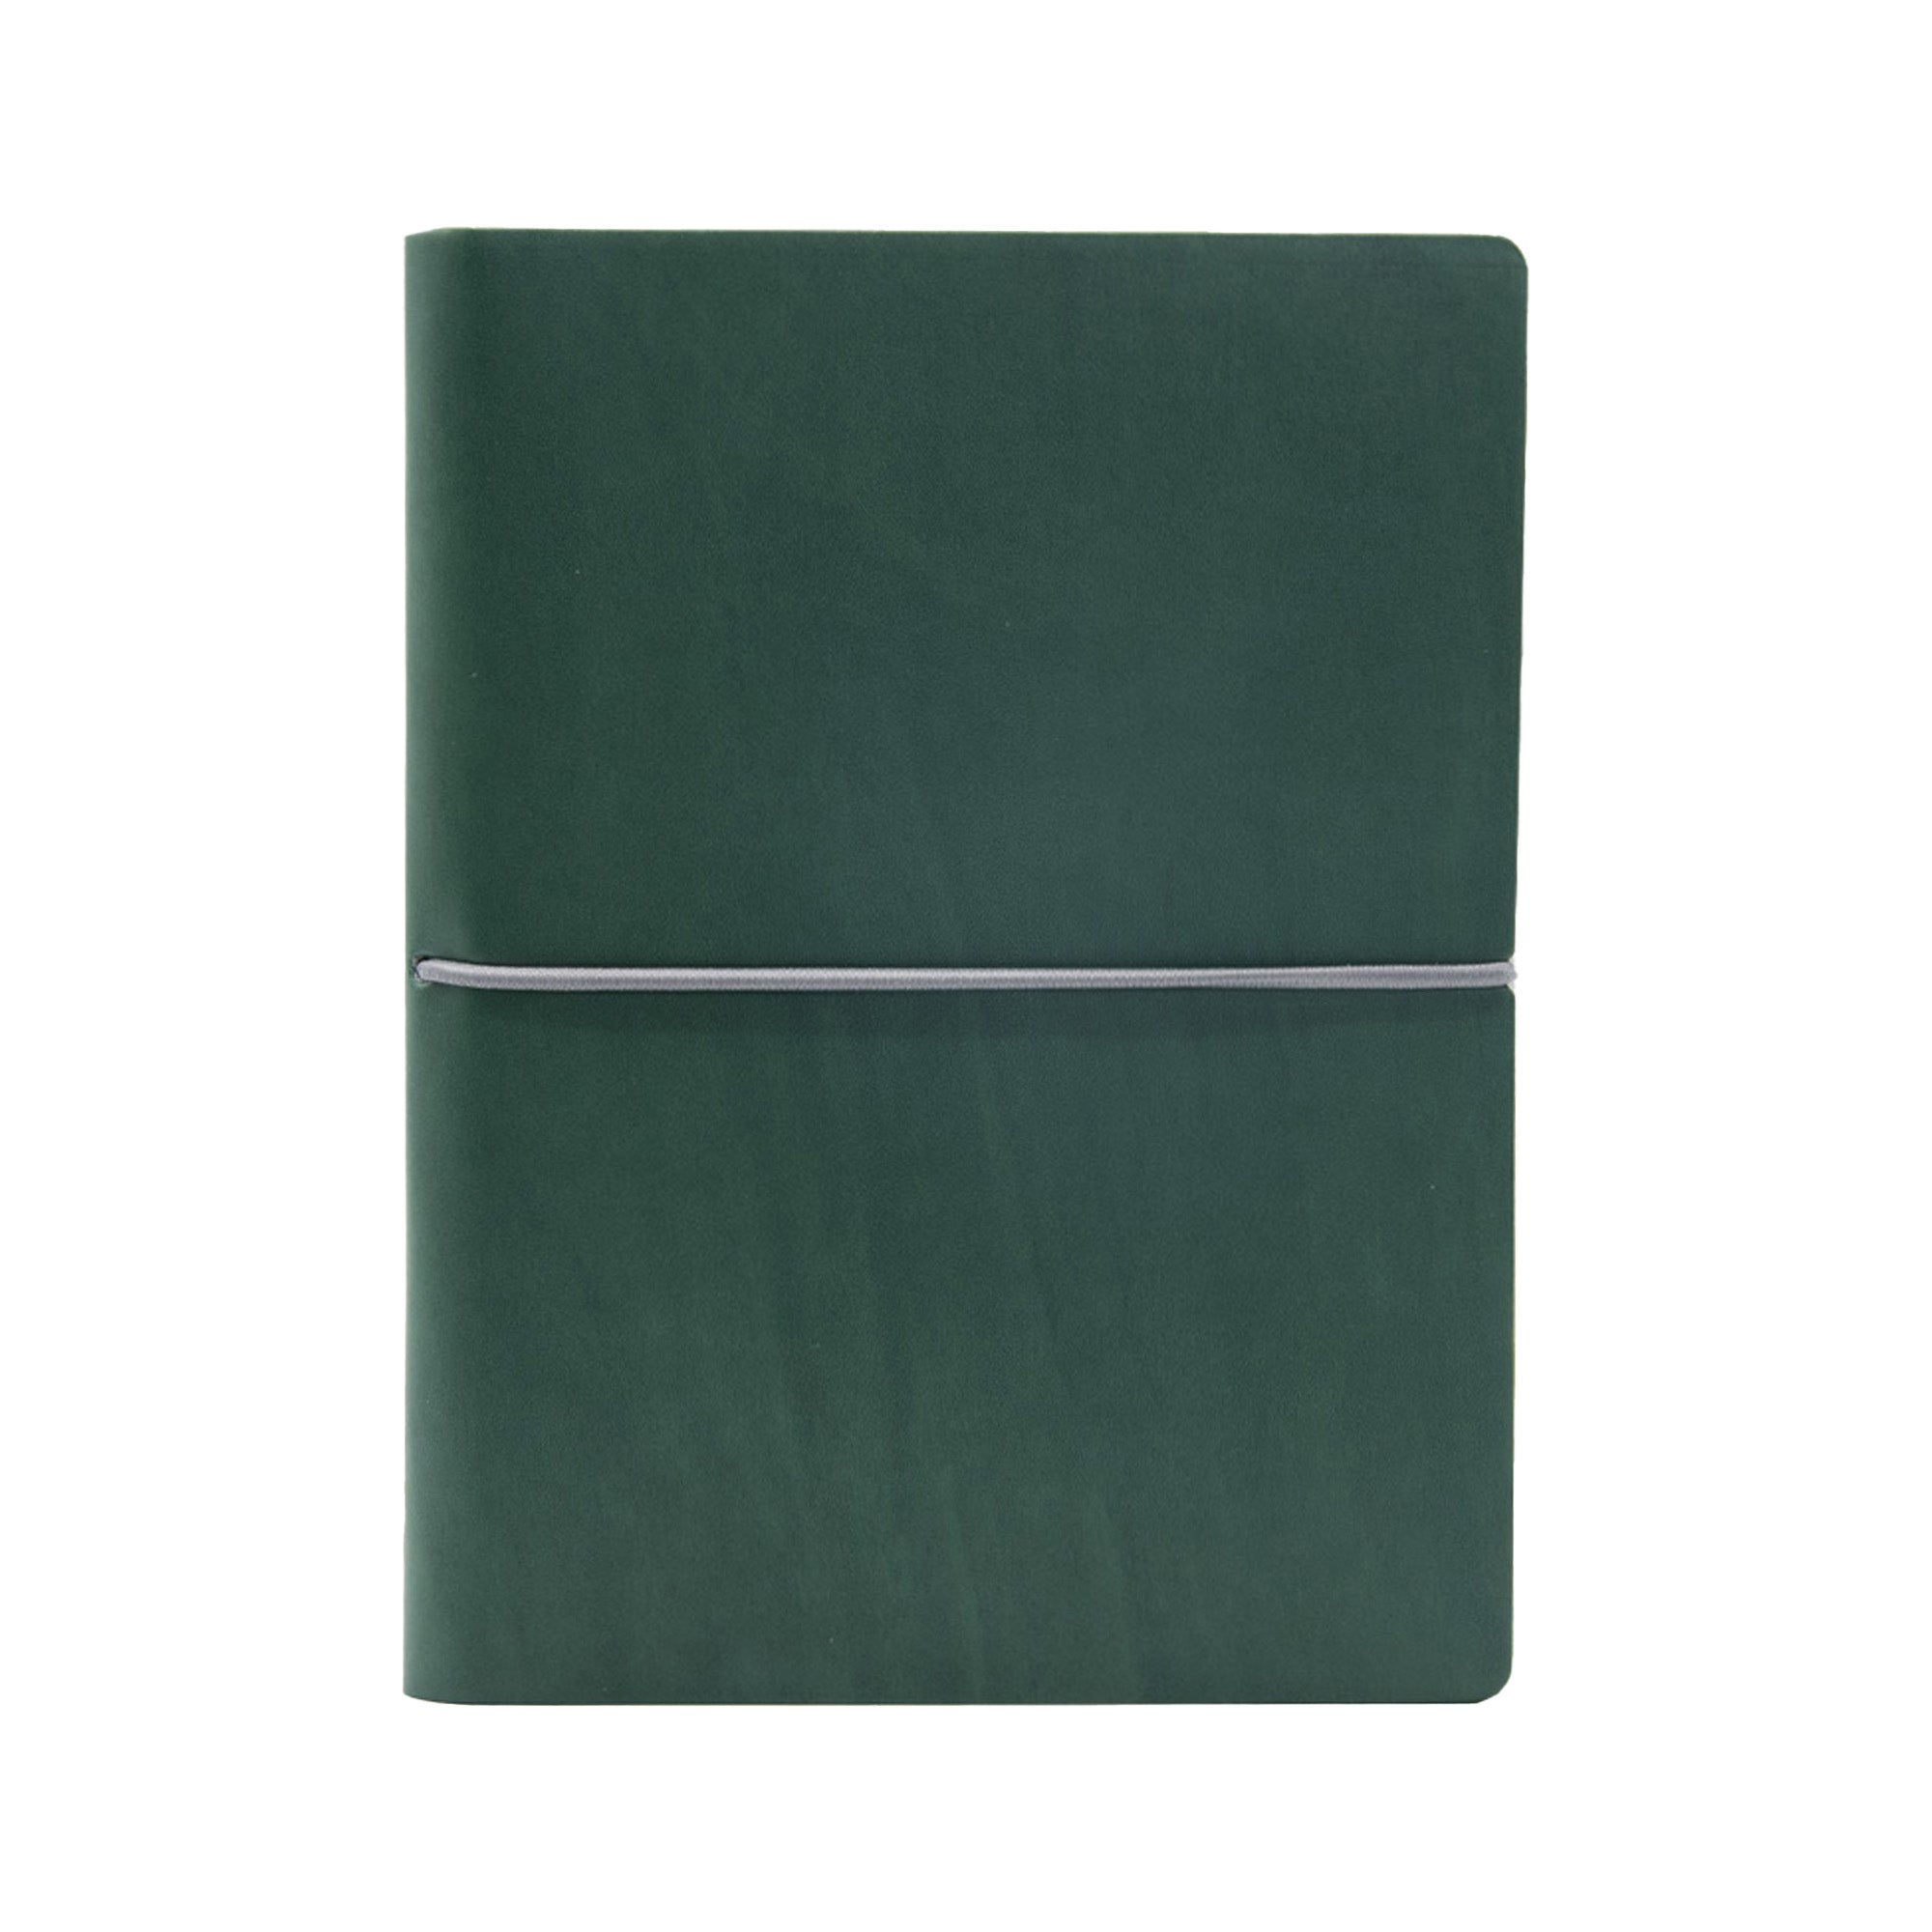 in-tempo-taccuino-evo-ciak-f-to-9x13cm-fogli-bianchi-copertina-verde-intempo